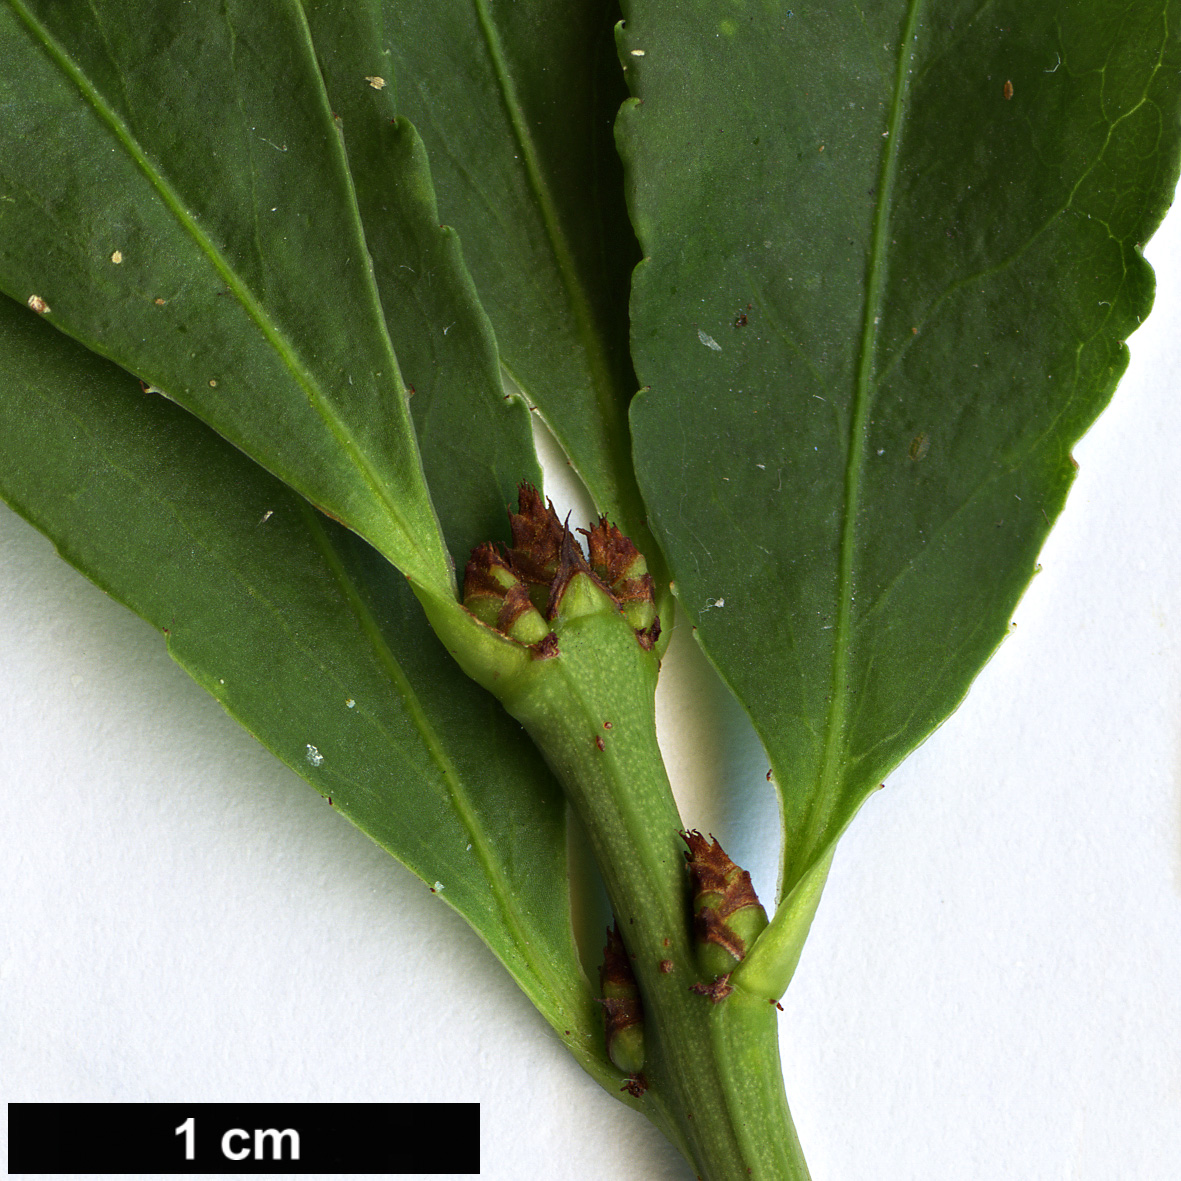 High resolution image: Family: Celastraceae - Genus: Euonymus - Taxon: alatus - SpeciesSub: var. ciliatodentatus